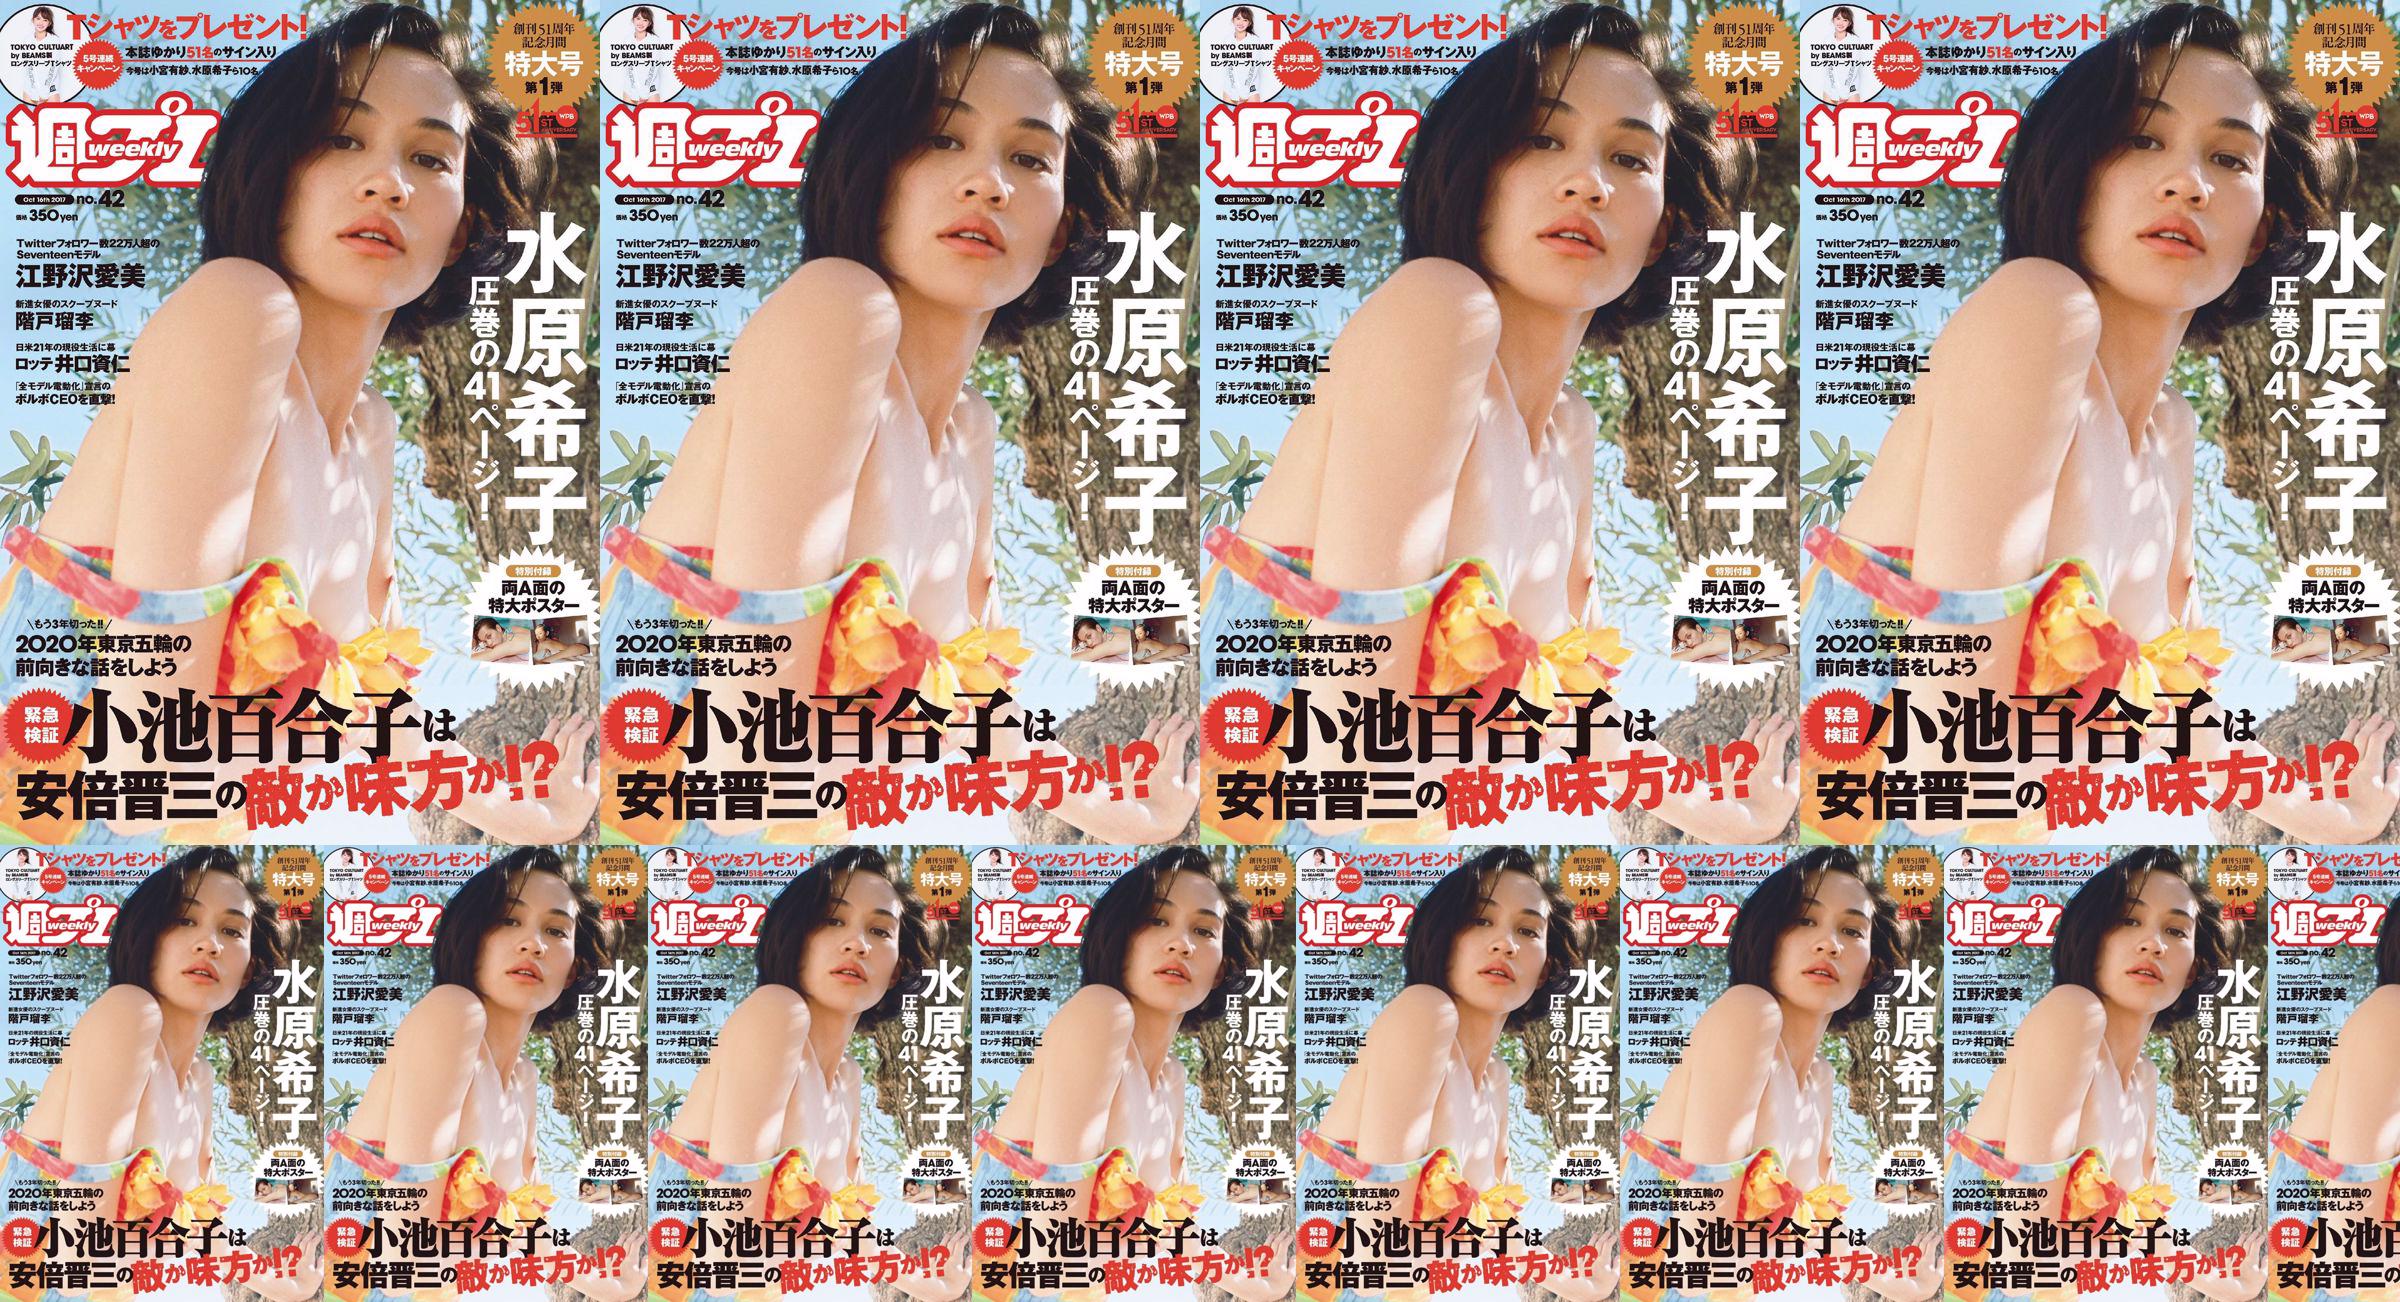 Kiko Mizuhara Manami Enosawa Serina Fukui Miu Nakamura Ruri Shinato [Weekly Playboy] 2017 No.42 Photo Magazine No.9783b2 Pagina 1